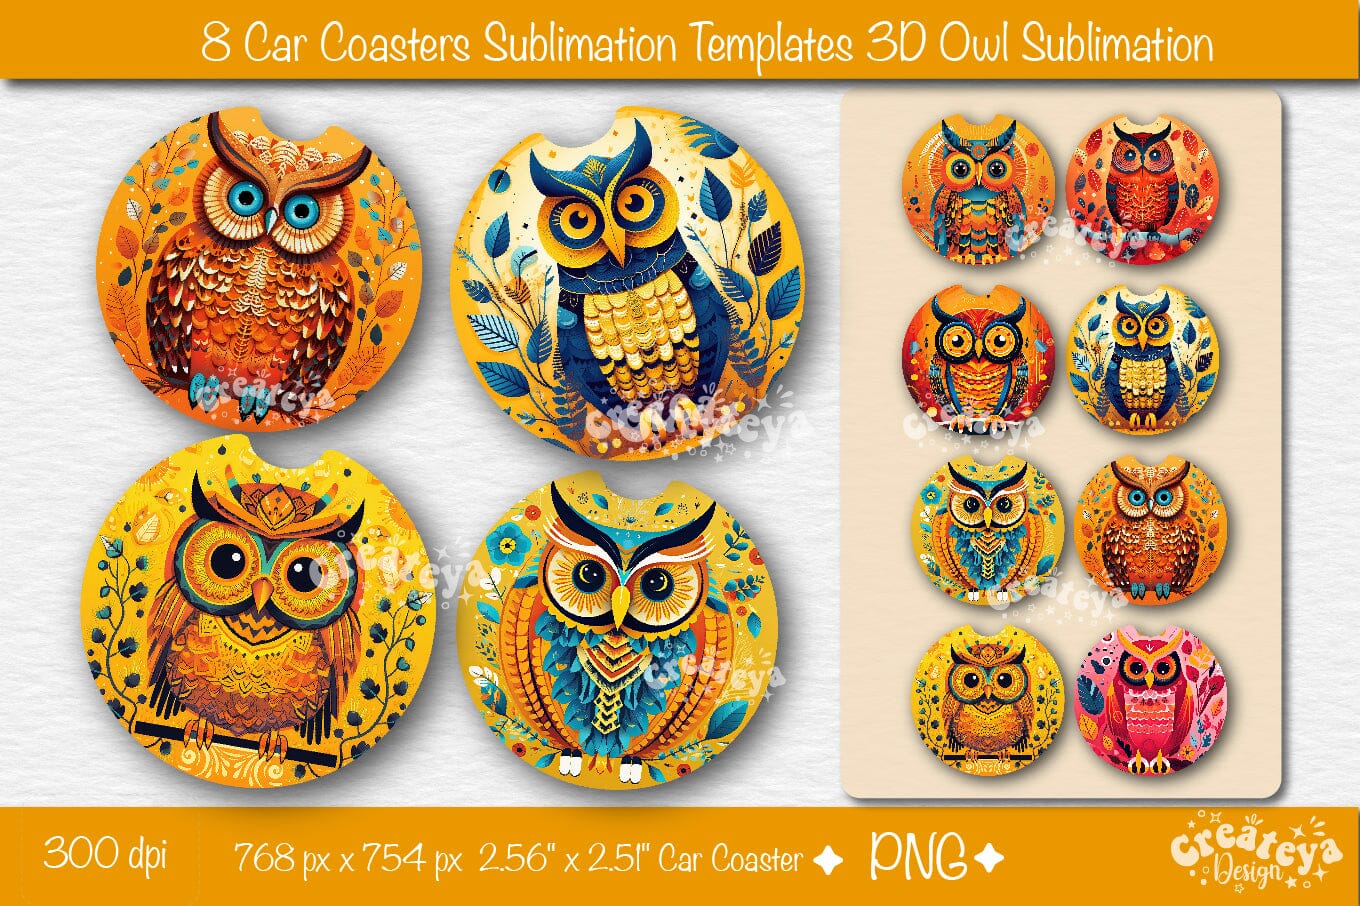 Car coaster Sublimation Designs Bundle 3D Owl Round Sublimation